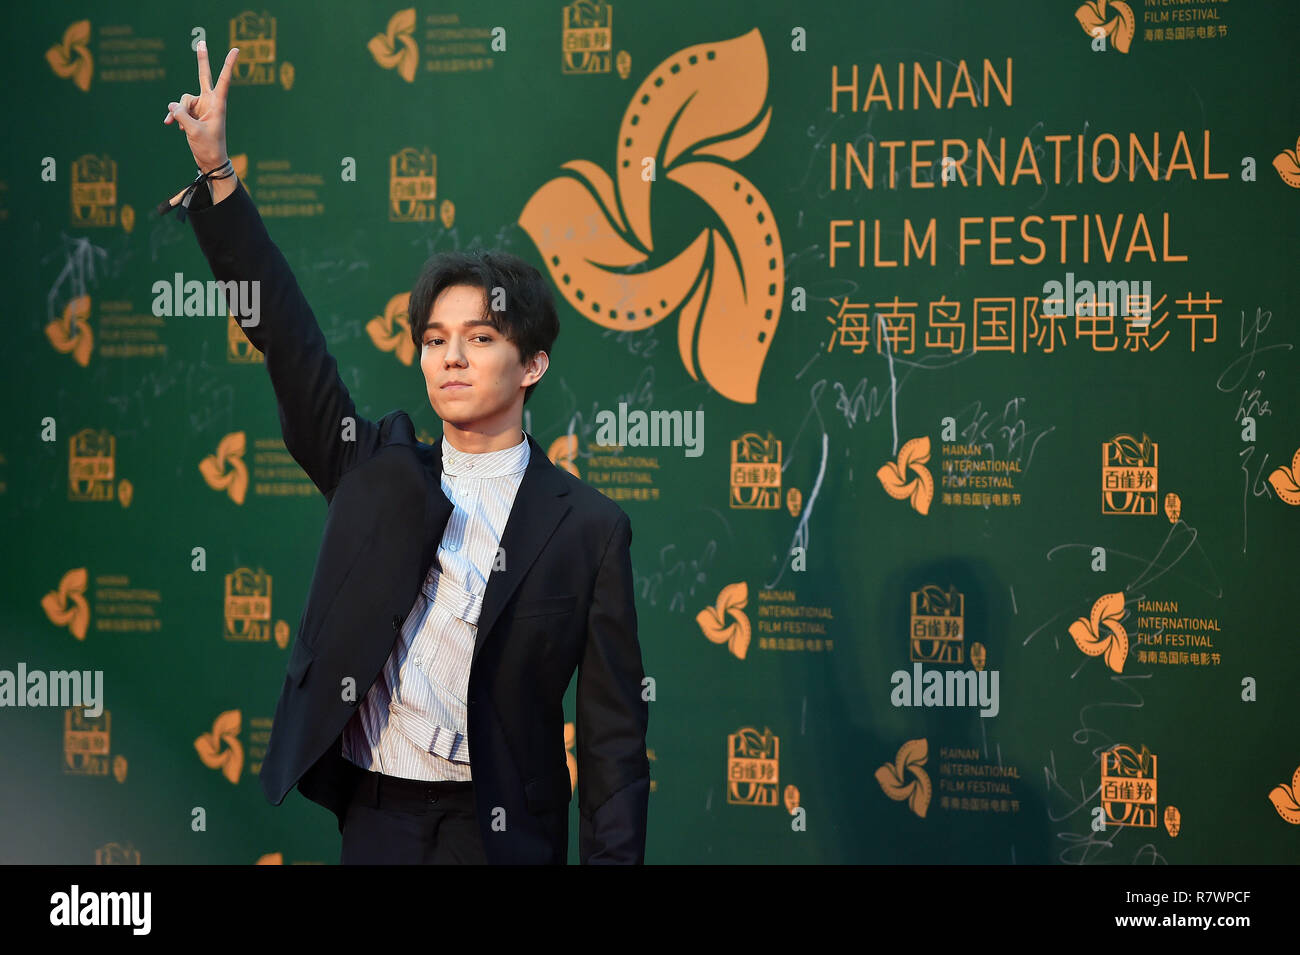 (181212) --, le 12 décembre 2018 (Xinhua) -- Singer Dimash Kudaibergen apparaît sur le tapis rouge de la cérémonie du 1er Festival International du Film de l'île de Hainan à Sanya, province de Hainan en Chine du sud, le 11 décembre 2018. Le premier Festival International du Film de Hainan a officiellement ouvert le mardi soir dans la ville de Sanya côtières tropicales dans le sud du pays - la plupart province insulaire de Hainan. Le film festival est l'un des du Hainan première série de projets dans le bâtiment lui-même dans un projet pilote de zone de libre-échange et un port de libre-échange. Le festival se déroulera du 9 au 16 décembre malgré une fin de la cérémonie d'ouverture Banque D'Images